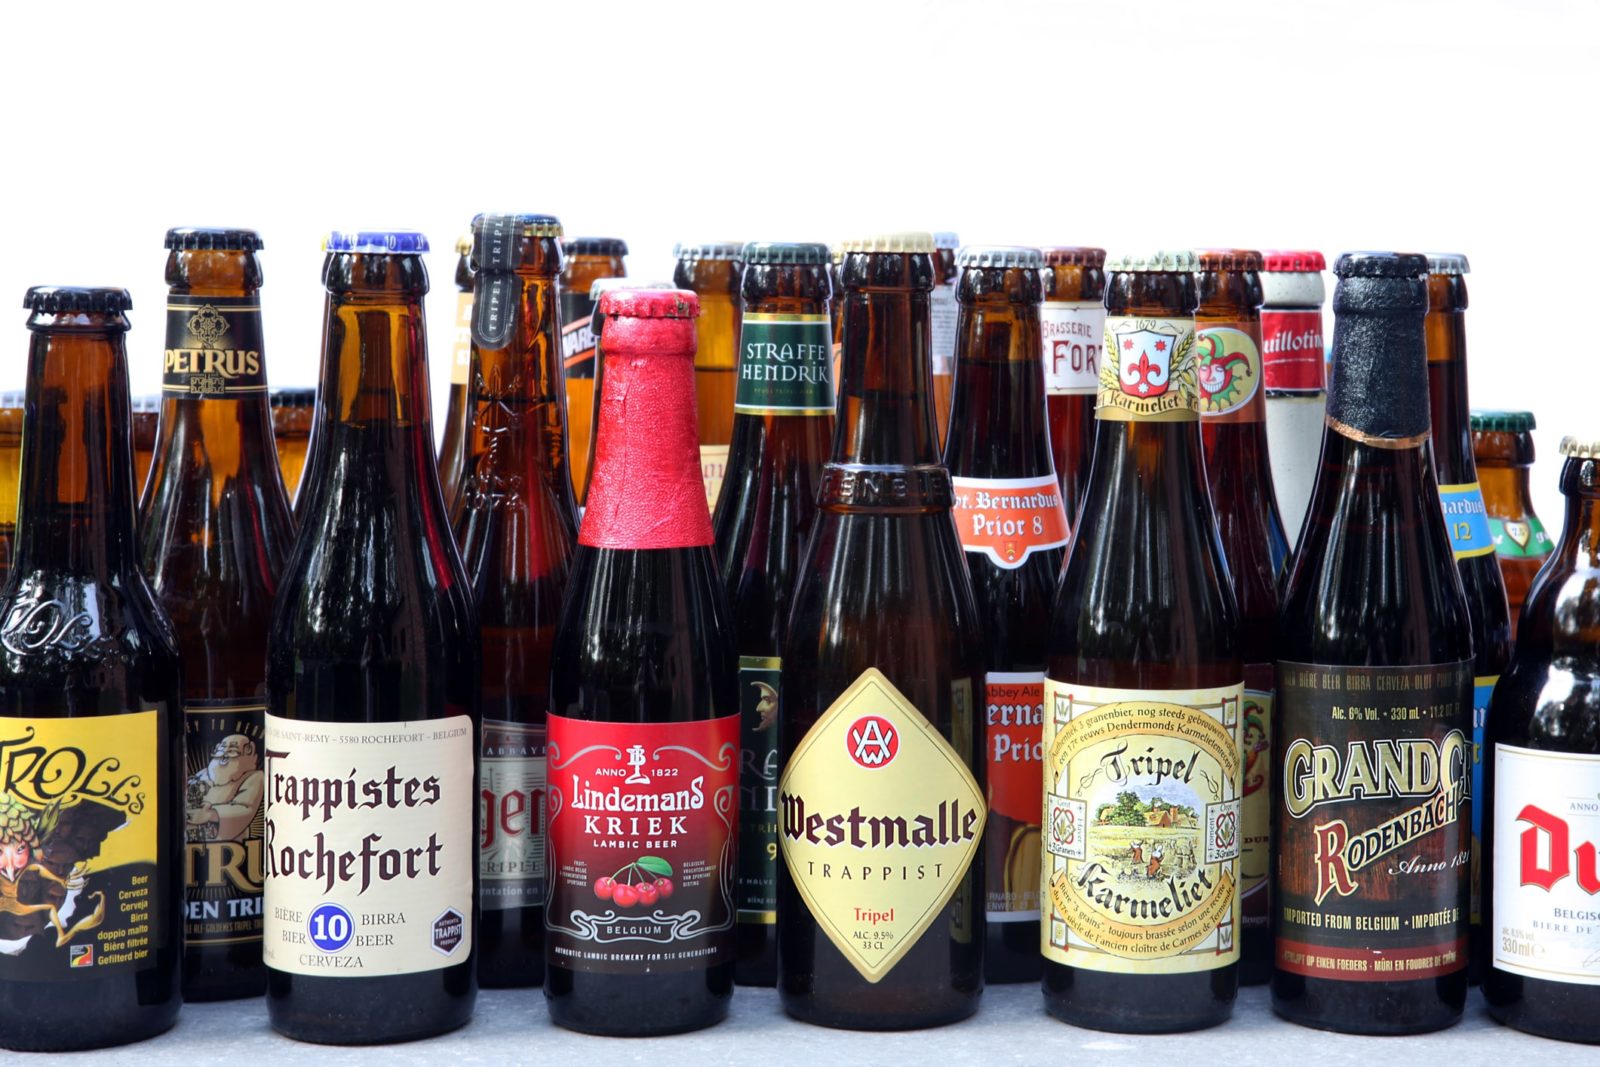 Темное пиво бутылка. Бельгиан Браун бельгийское пиво. Бельское пиво. Бельгийское пиво в бутылках. Бельгийское темное пиво.